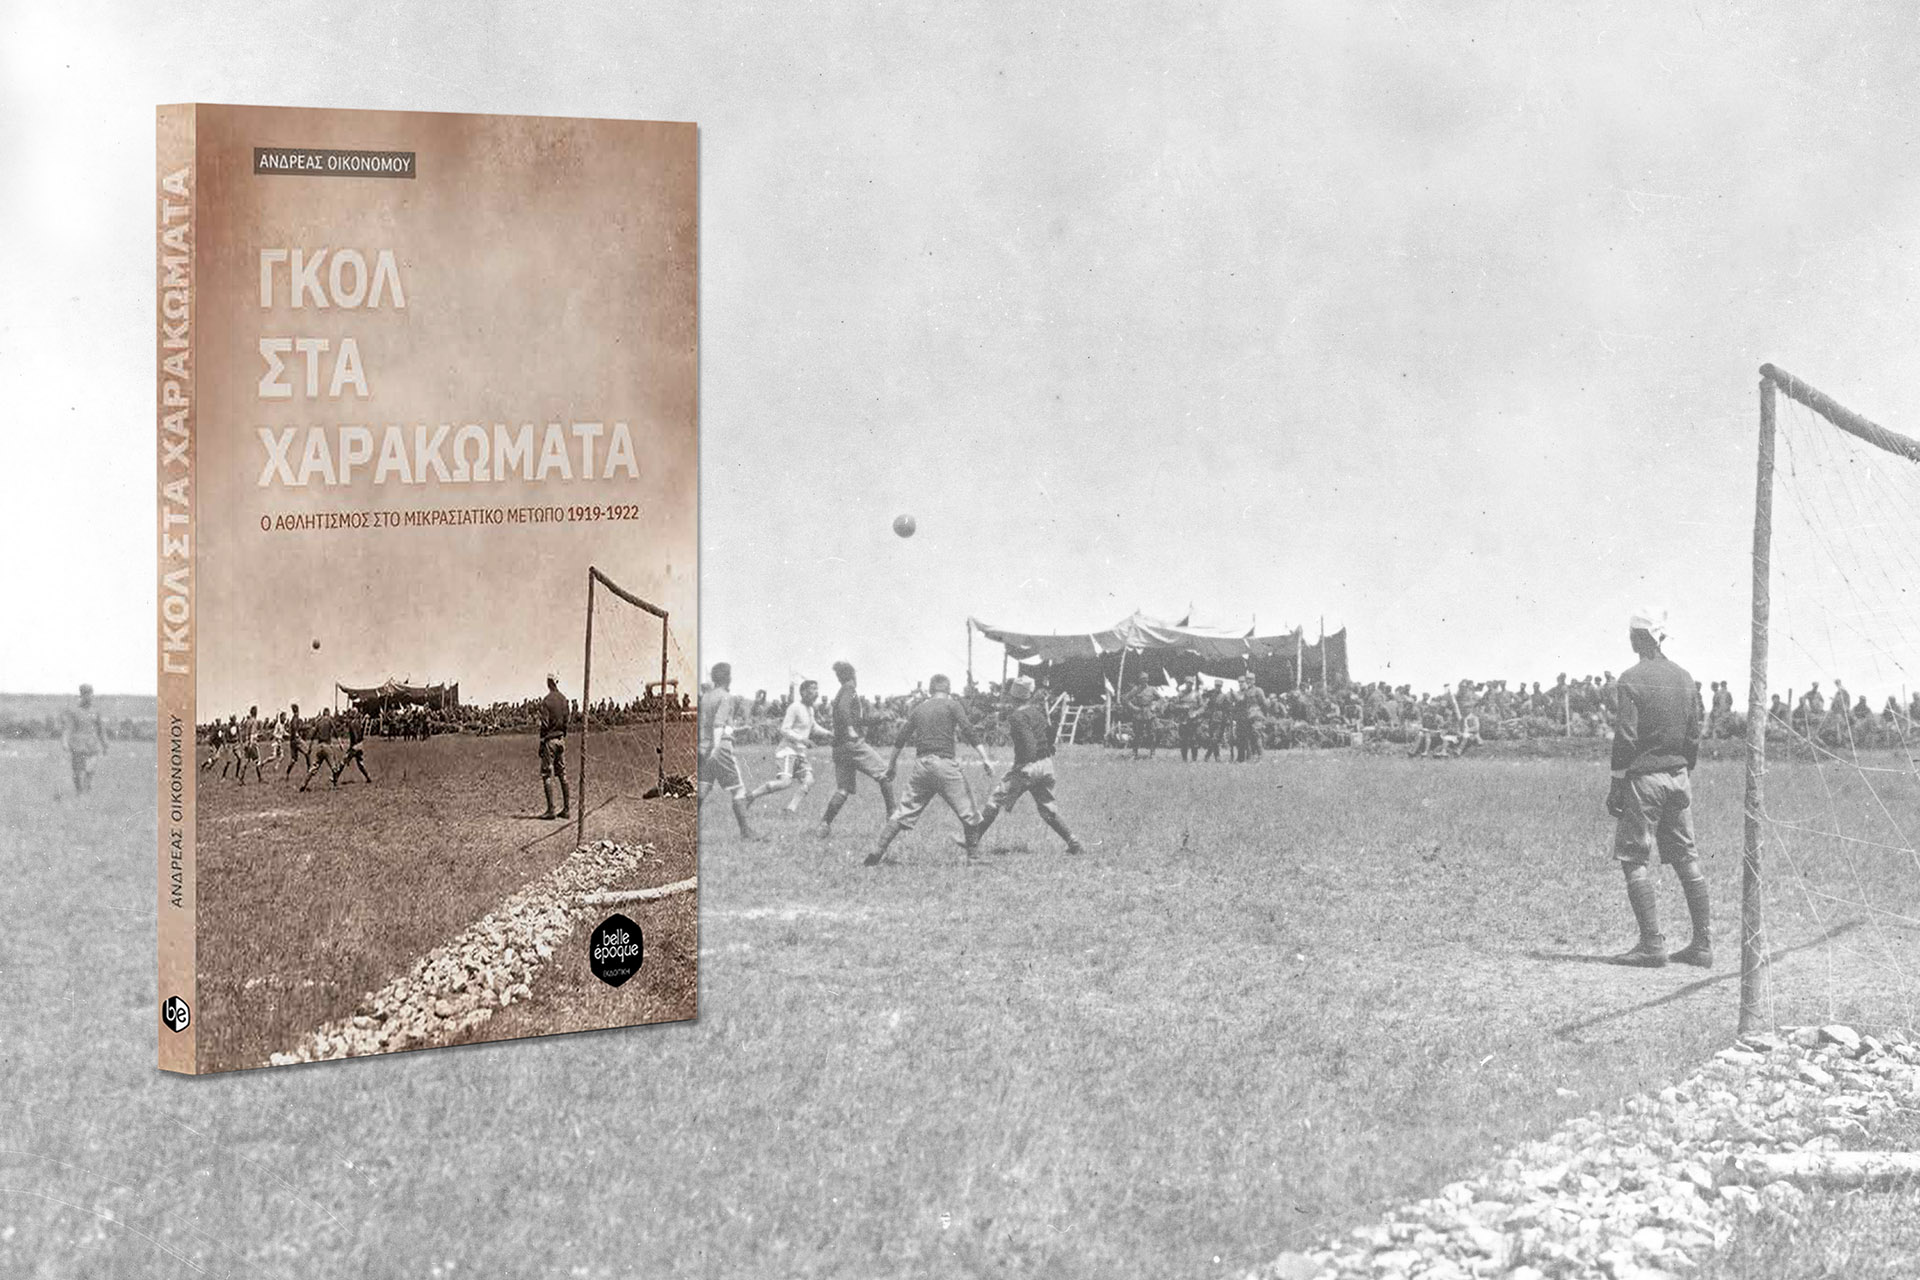 Γκολ στα χαρακώματα - Η ιστορία του αθλητισμού στο Μικρασιατικό Μέτωπο 1919-1922 - Ανδρέας Οικονόμου